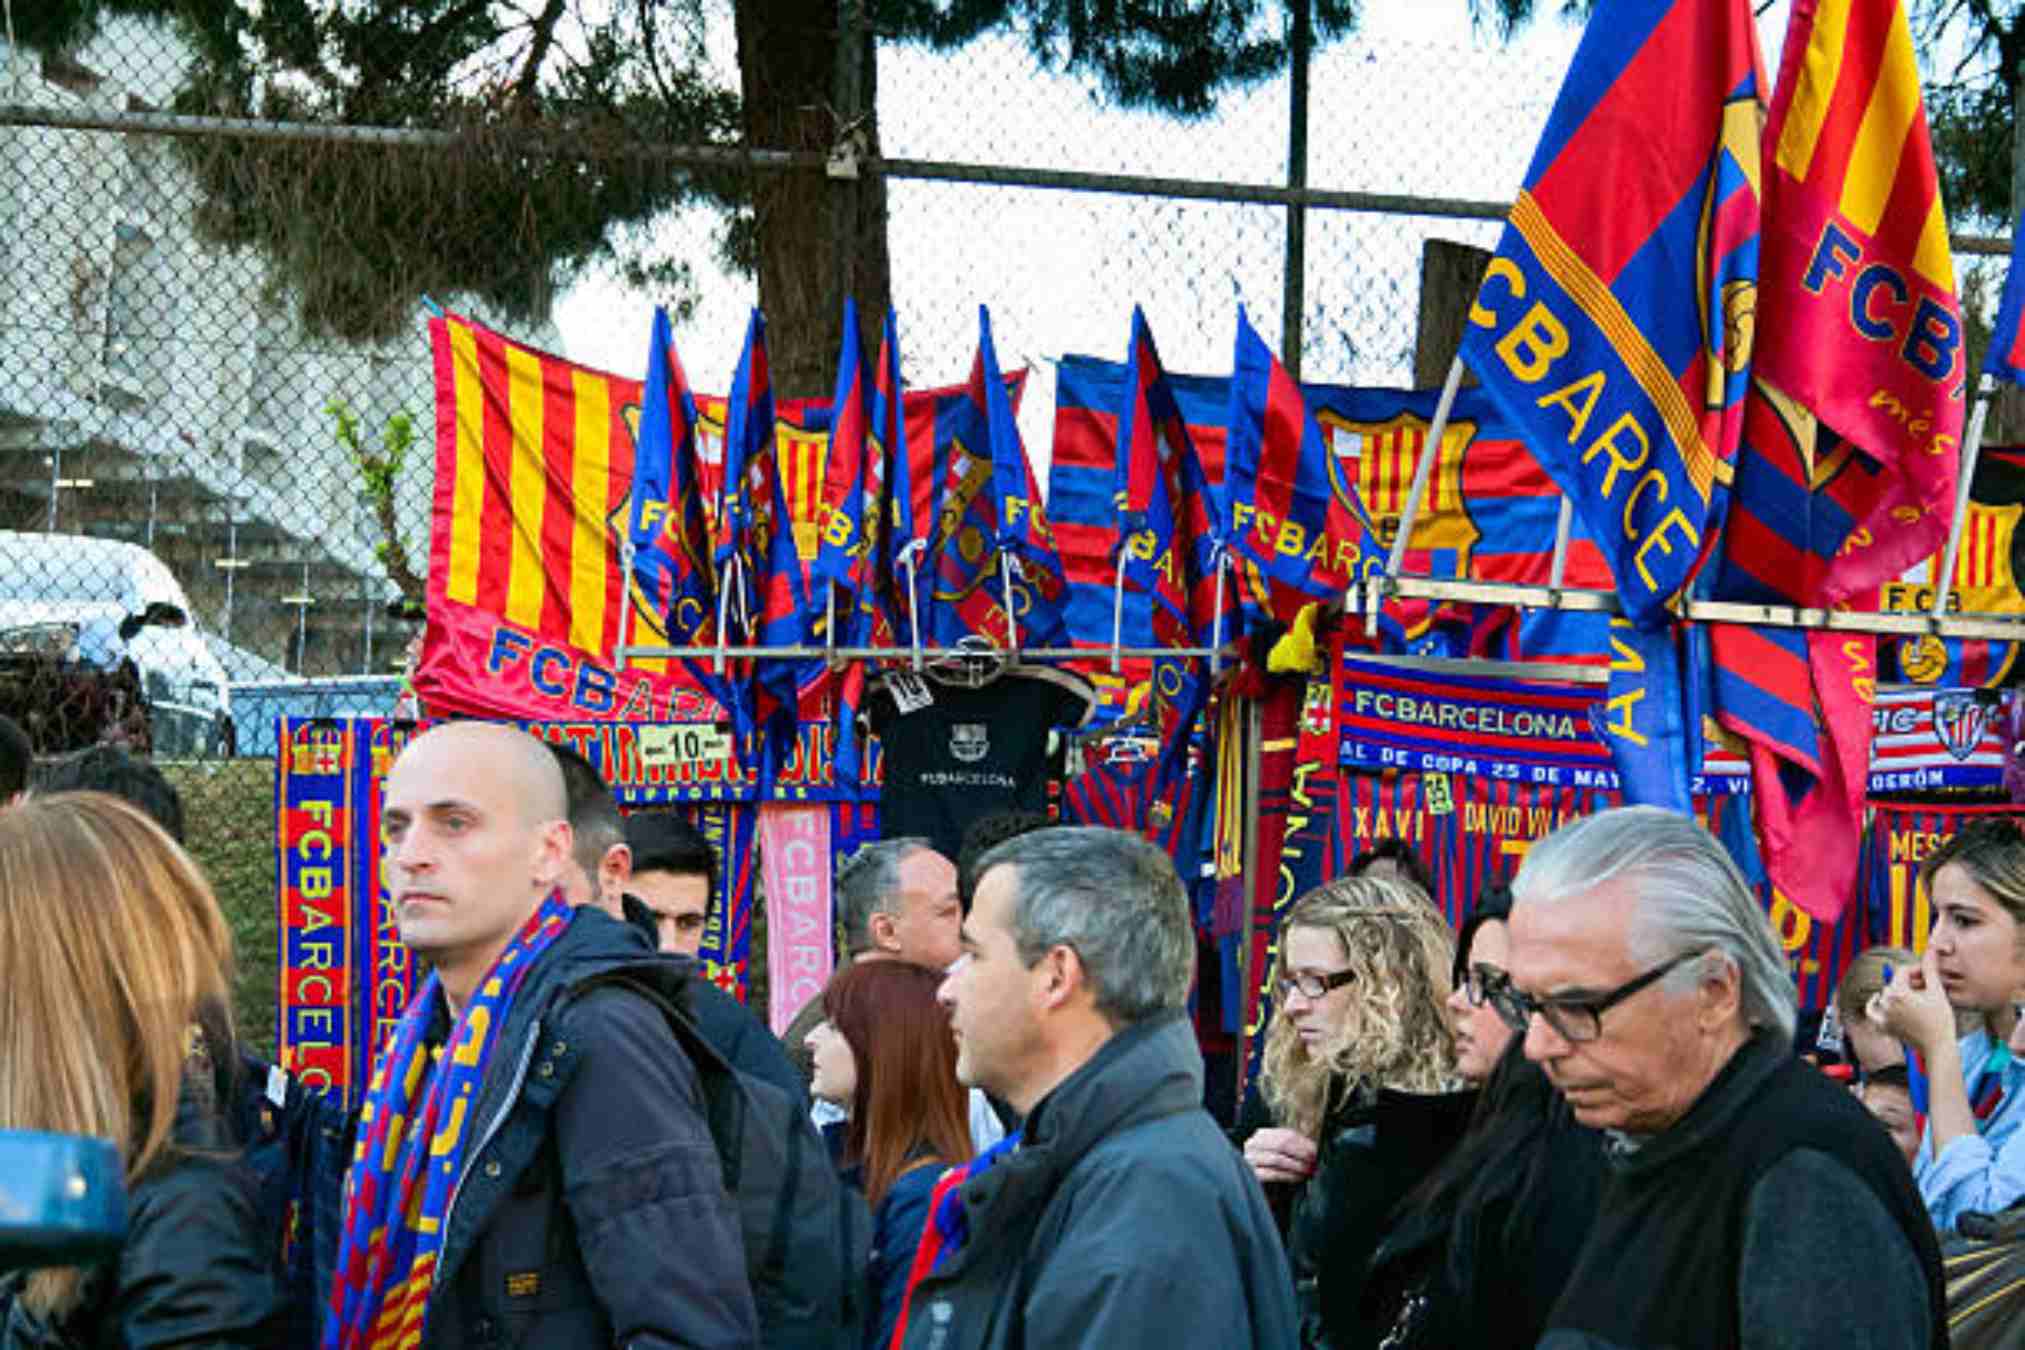 No s'hauran de portar paraigües al Camp Nou pel clàssic / Imatge: Istock